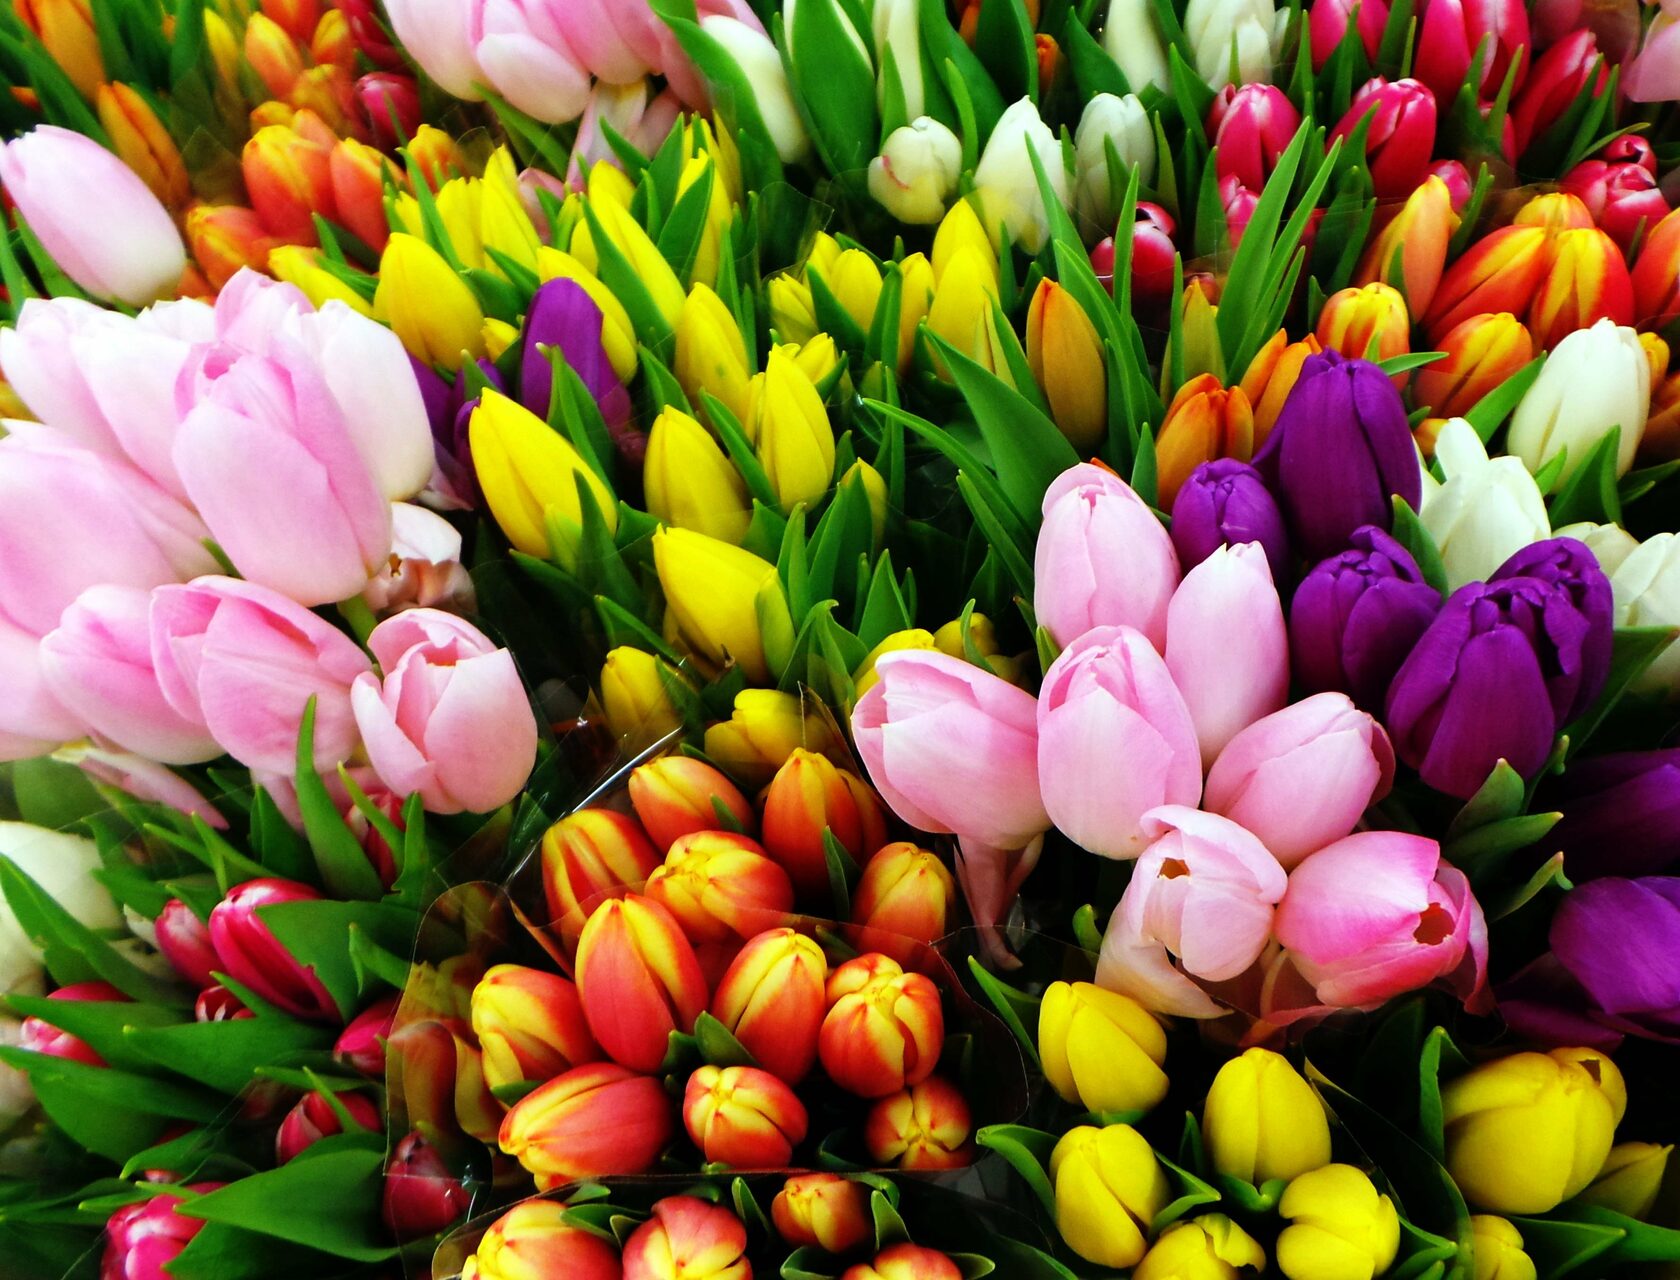 Больое количество разноцветных тюльпанов